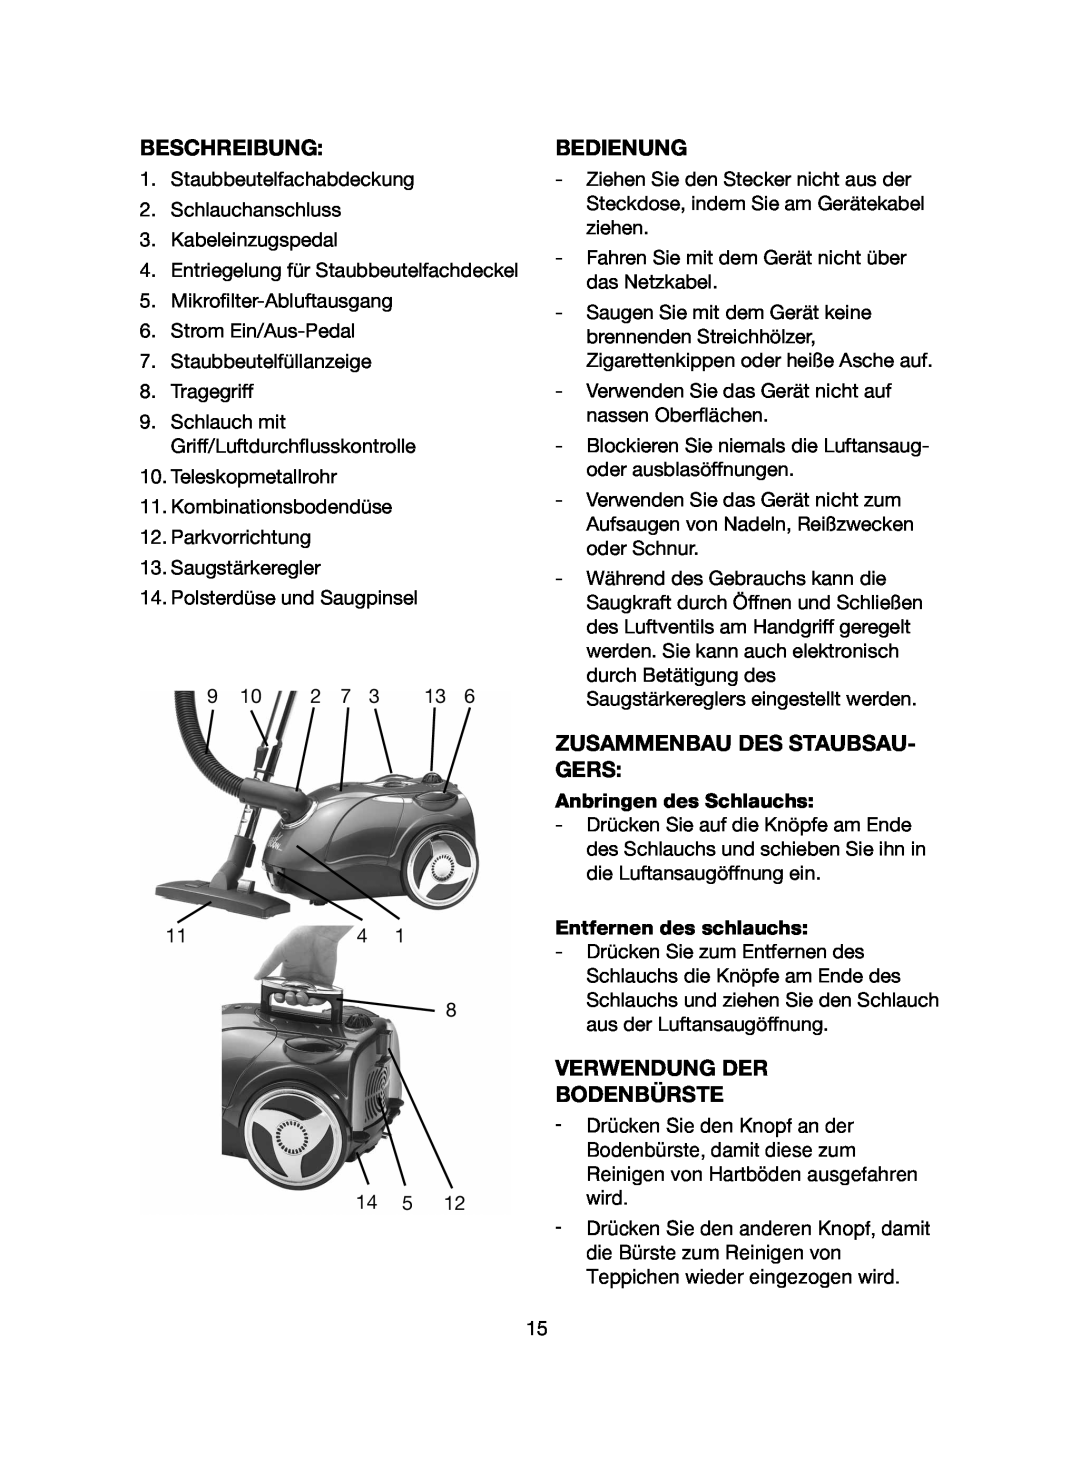 Melissa 740-107 manual Beschreibung, Bedienung, Zusammenbau Des Staubsau- Gers, Verwendung Der Bodenbürste 